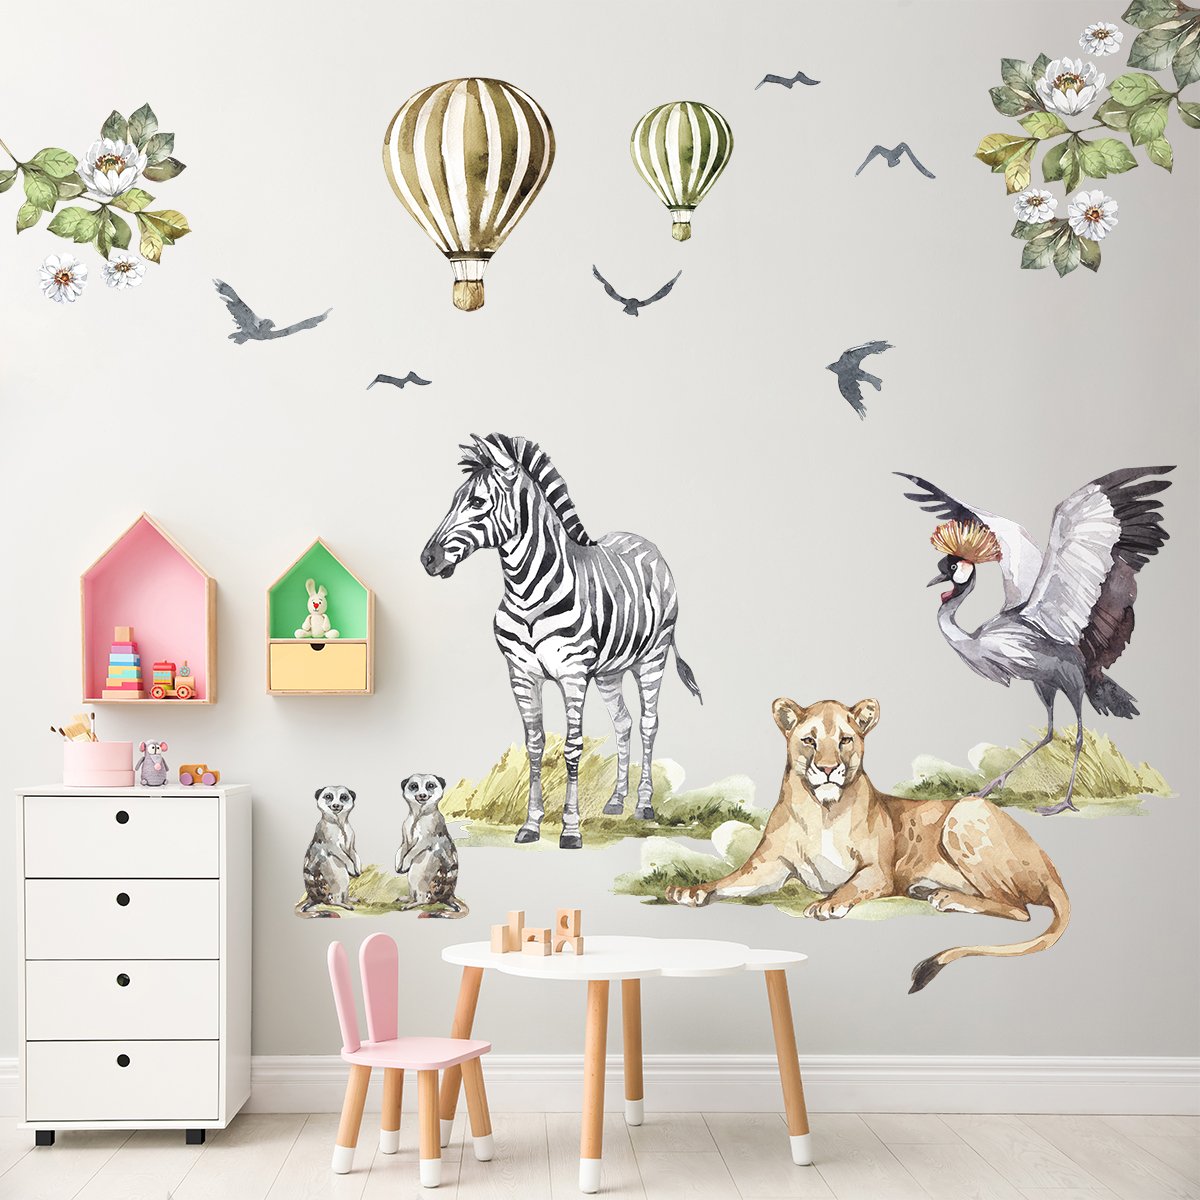 Naklejki dla dzieci sawanna i dzikie zwierzęta Afryki naklejone na ścianie w pokoju dziecięcym - pomysł na dekorację ścian pokoju dziewczynki